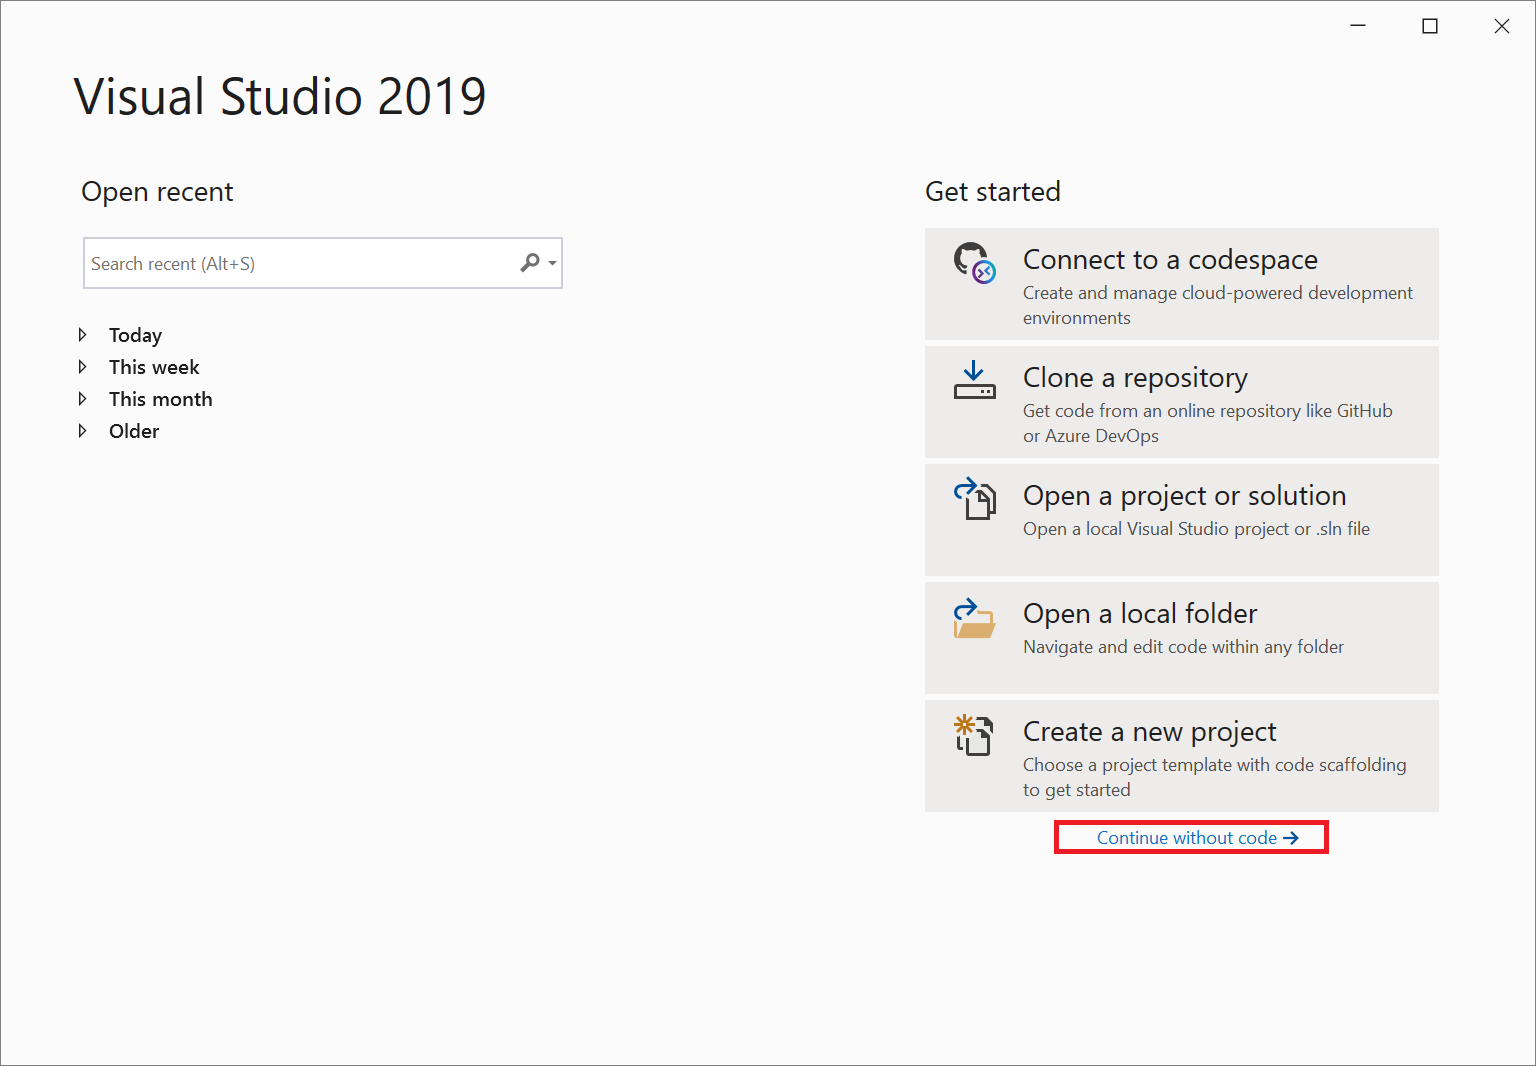 '코드 없이 계속' 링크가 강조 표시된 Visual Studio 2019 시작 창의 스크린샷입니다.